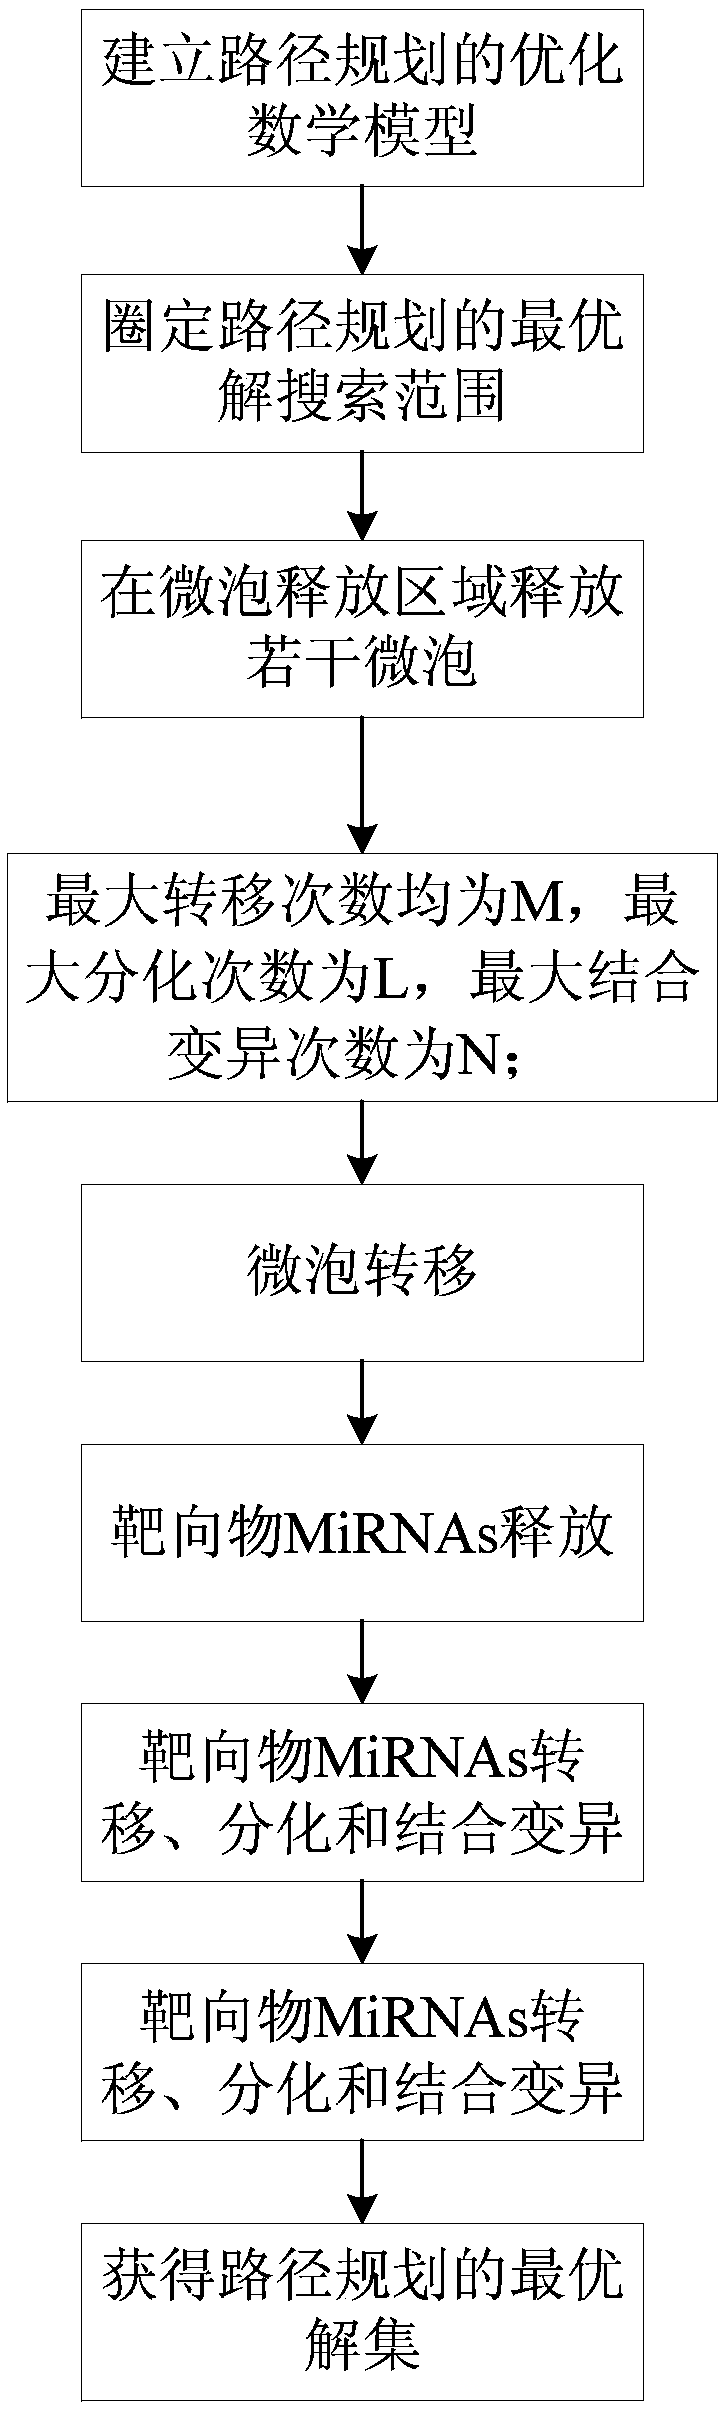 Path planning method based on UTMD algorithm